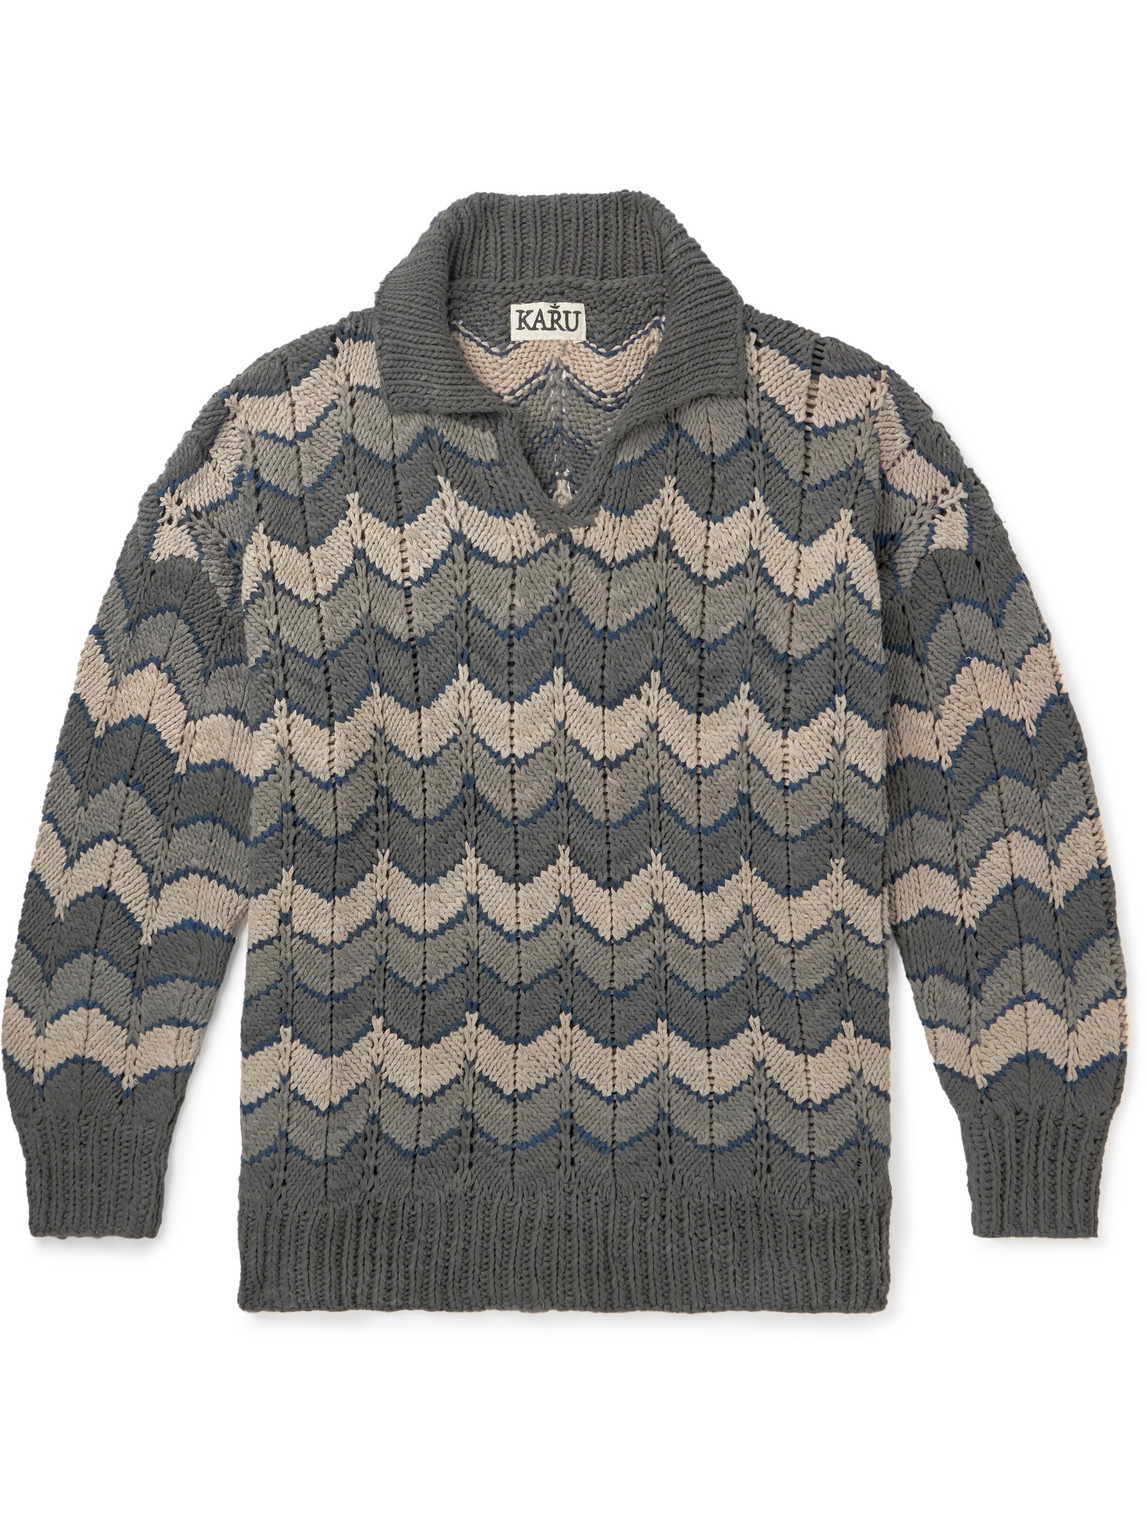 Kartik Research - Chevron Cotton Sweater - Men - Gray - S von Kartik Research